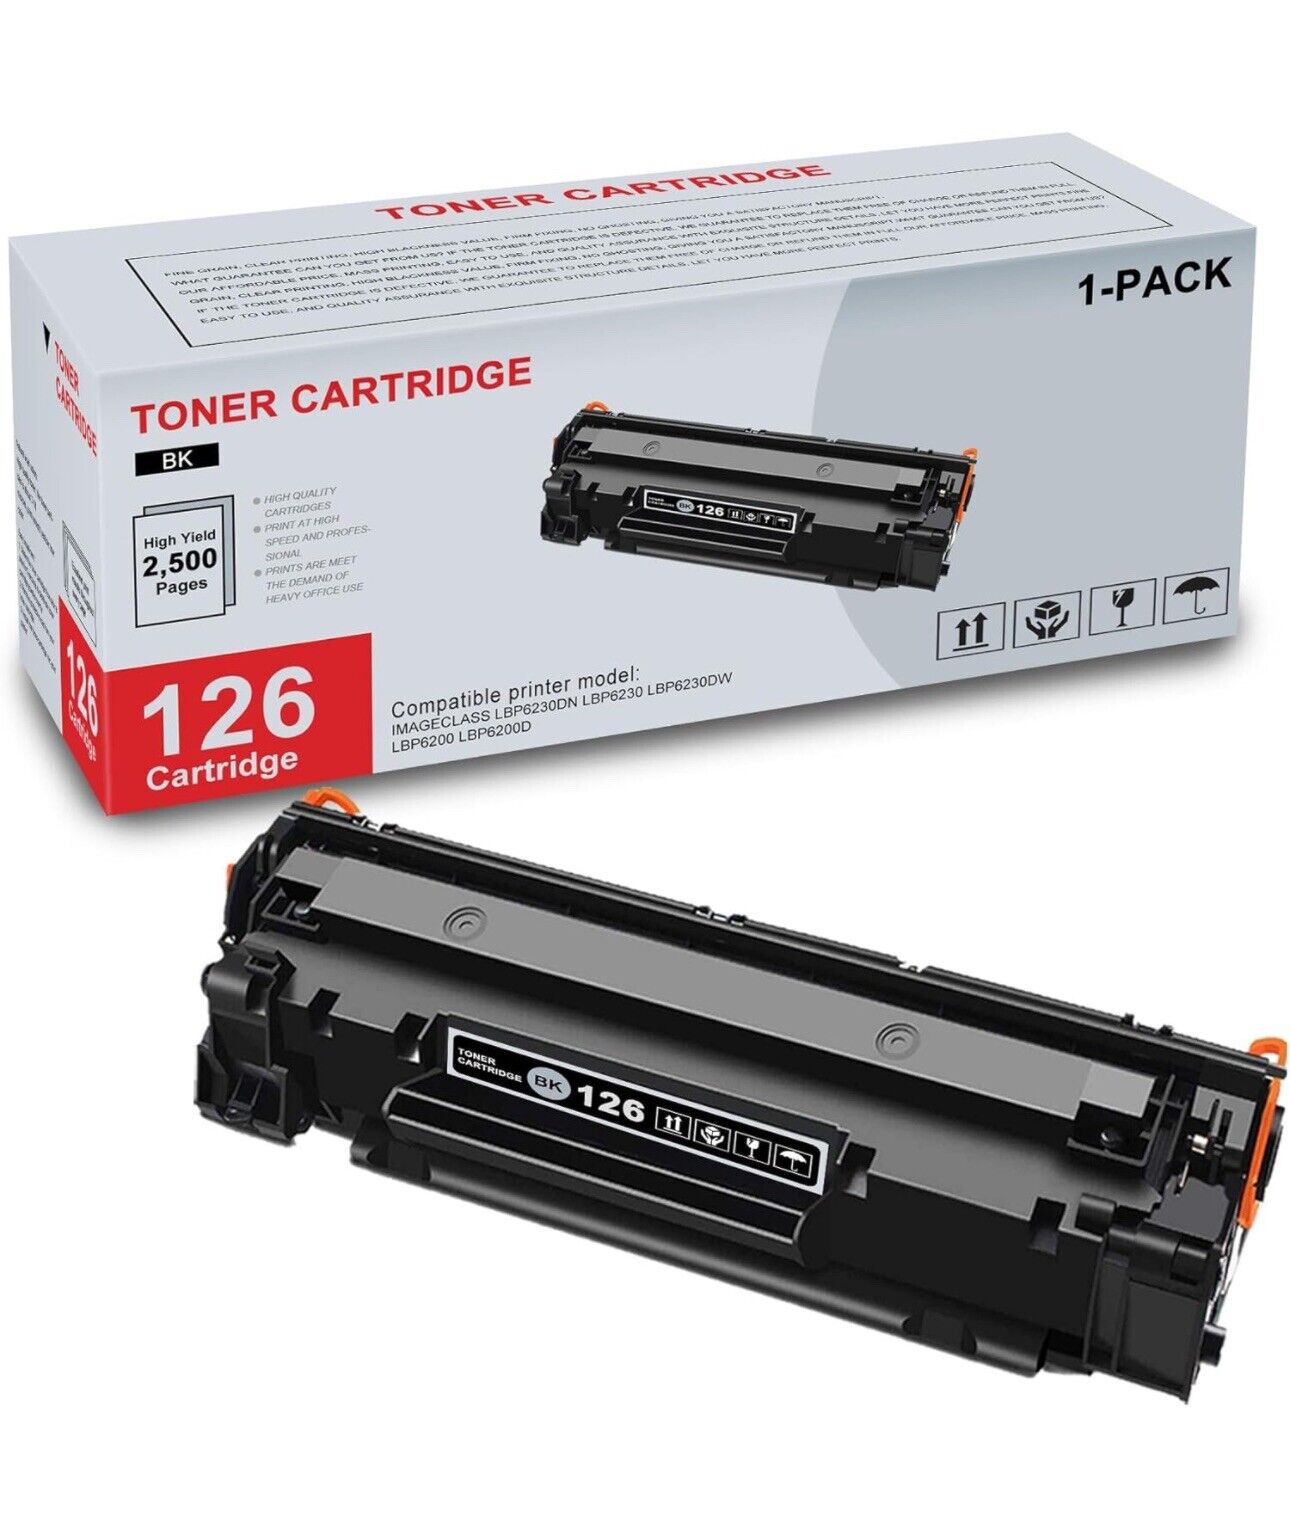 1 Pack CRG-126 Black Compatible for Canon imageCLASS LBP6200d Toner Cartridge